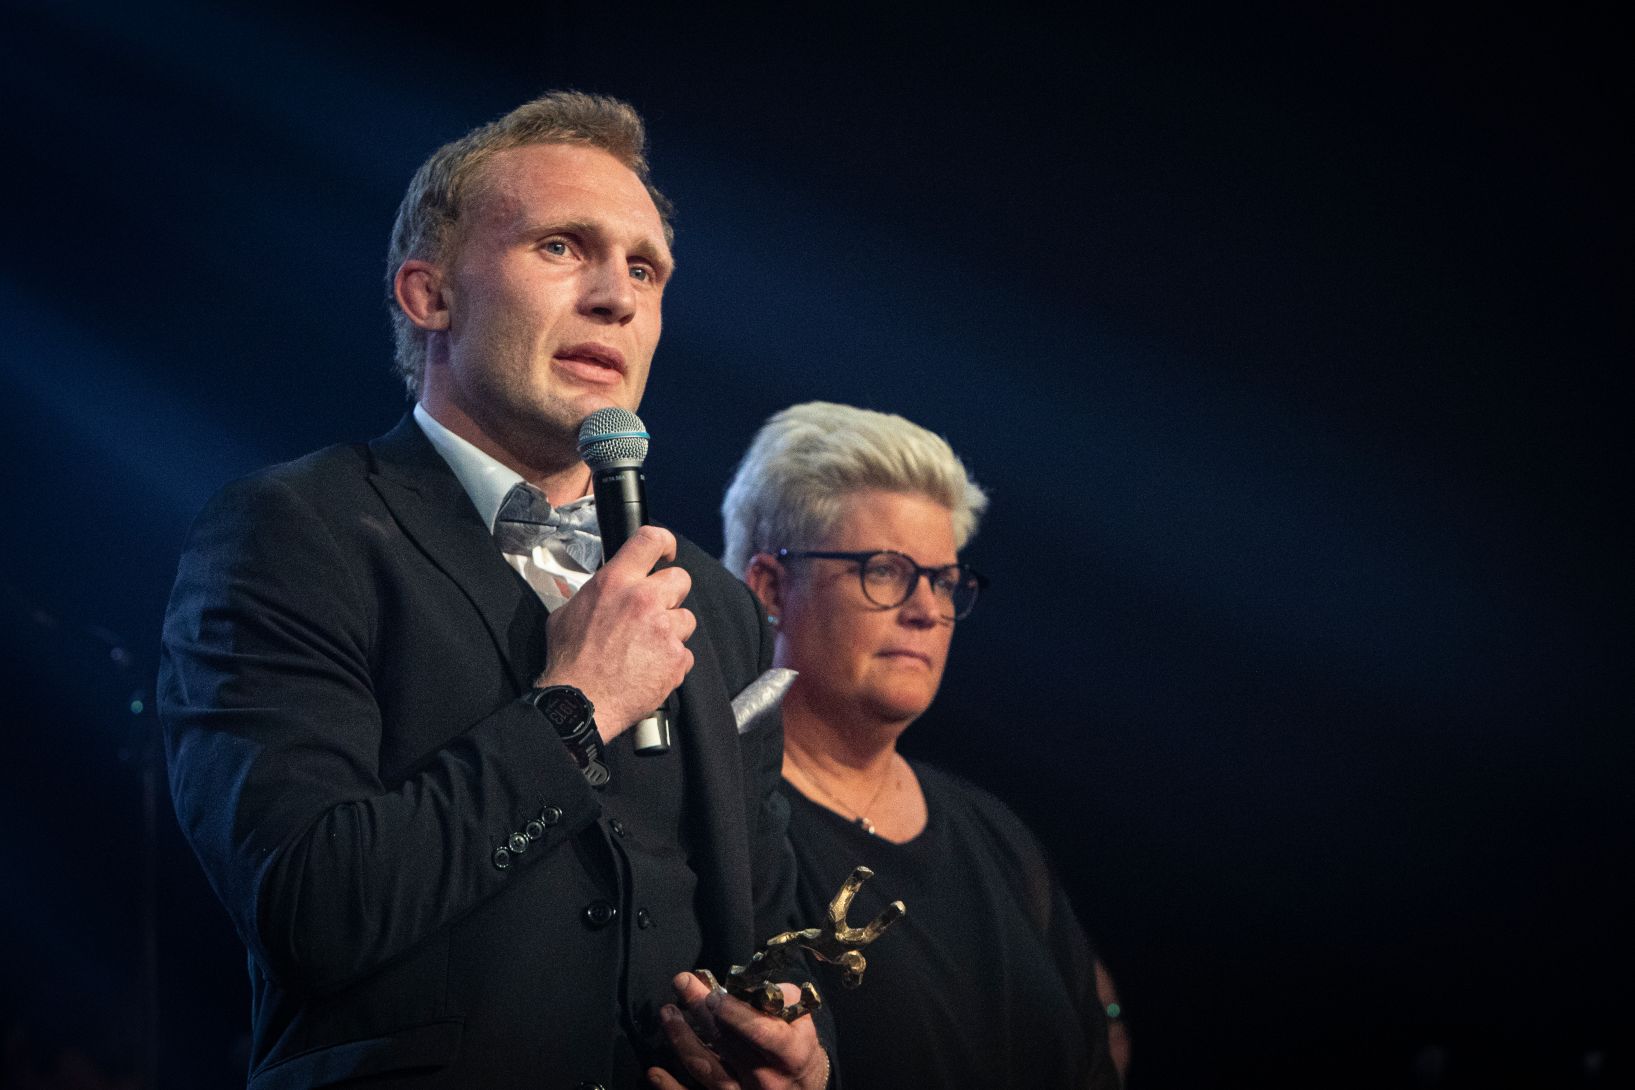 Emil Bertzell-Ejneby vann Årets idrottsprestation och tog emot priset av bland andra Ulrika Ringström